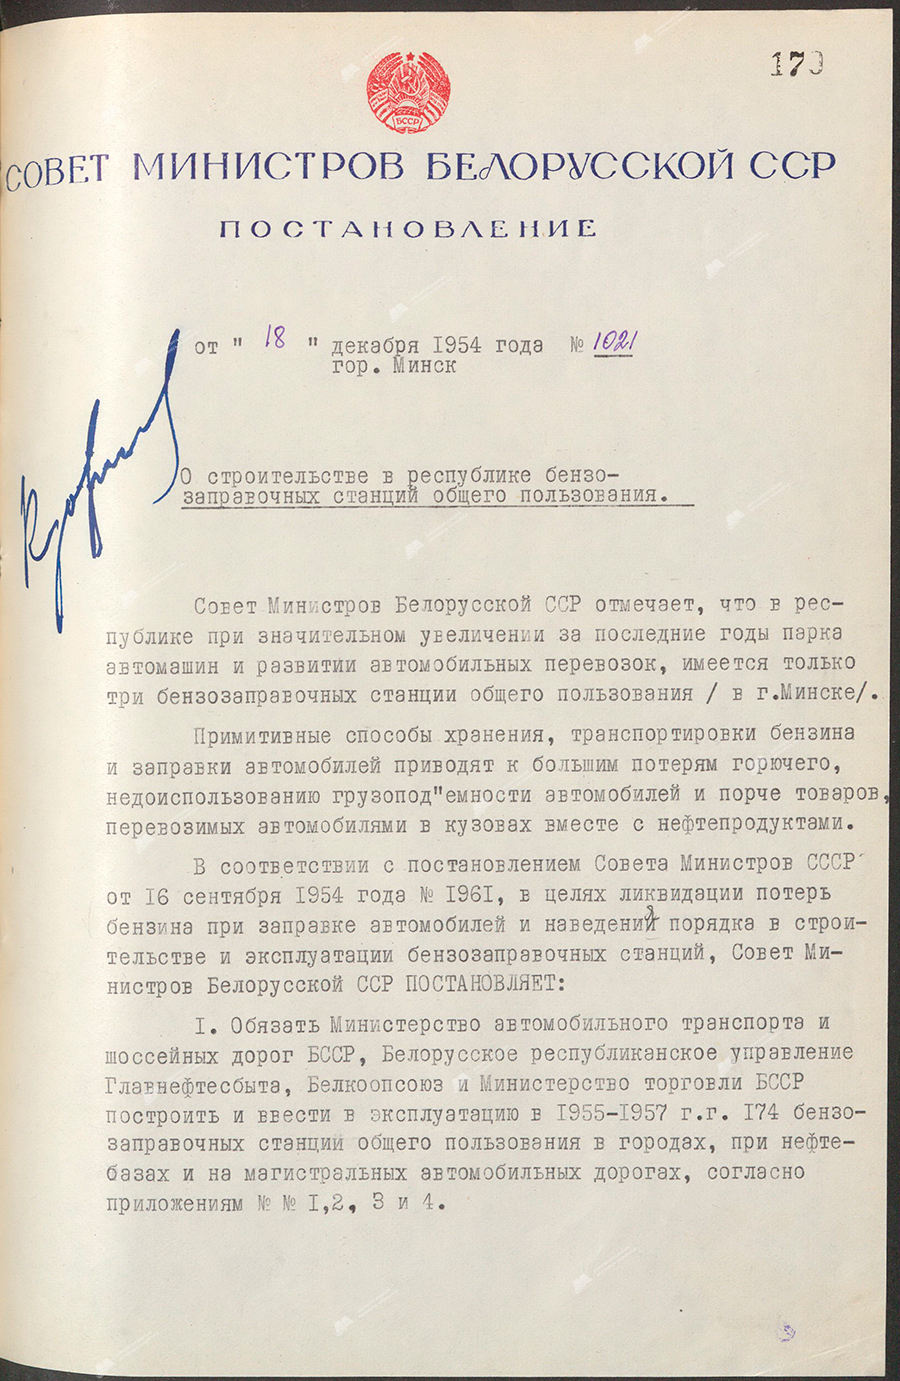 Beschluss Nr. 1021 des Ministerrats der Weißrussischen SSR «Über den Bau öffentlicher Gastankstellen in der Republik»-с. 0